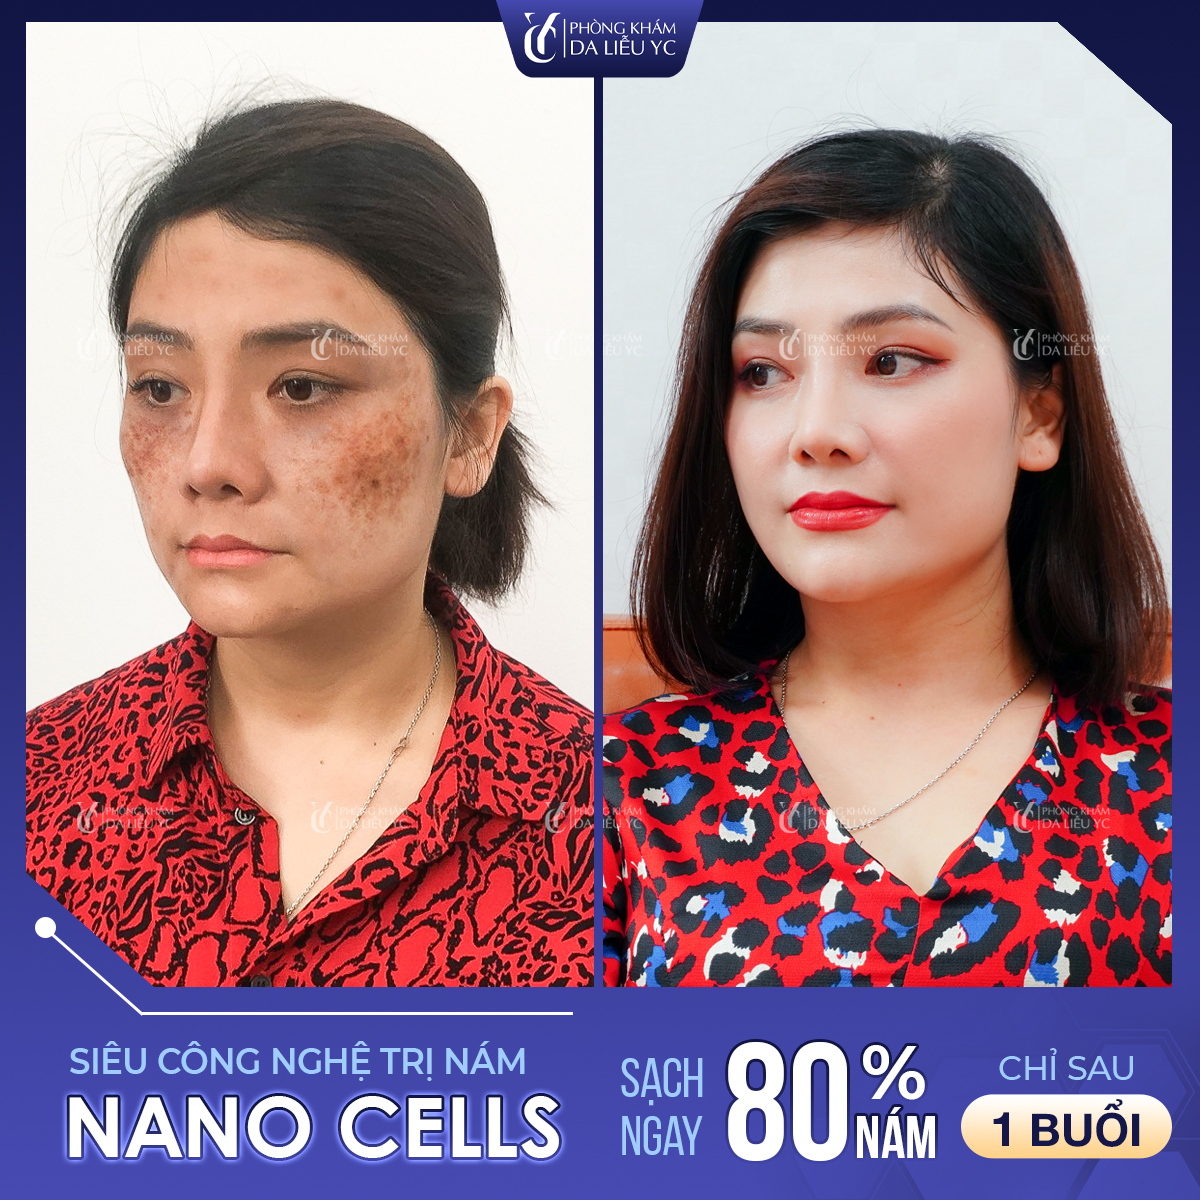 Công nghệ Nano Cell xóa bỏ mọi vết nám chỉ ngay lần thực hiện đầu tiên